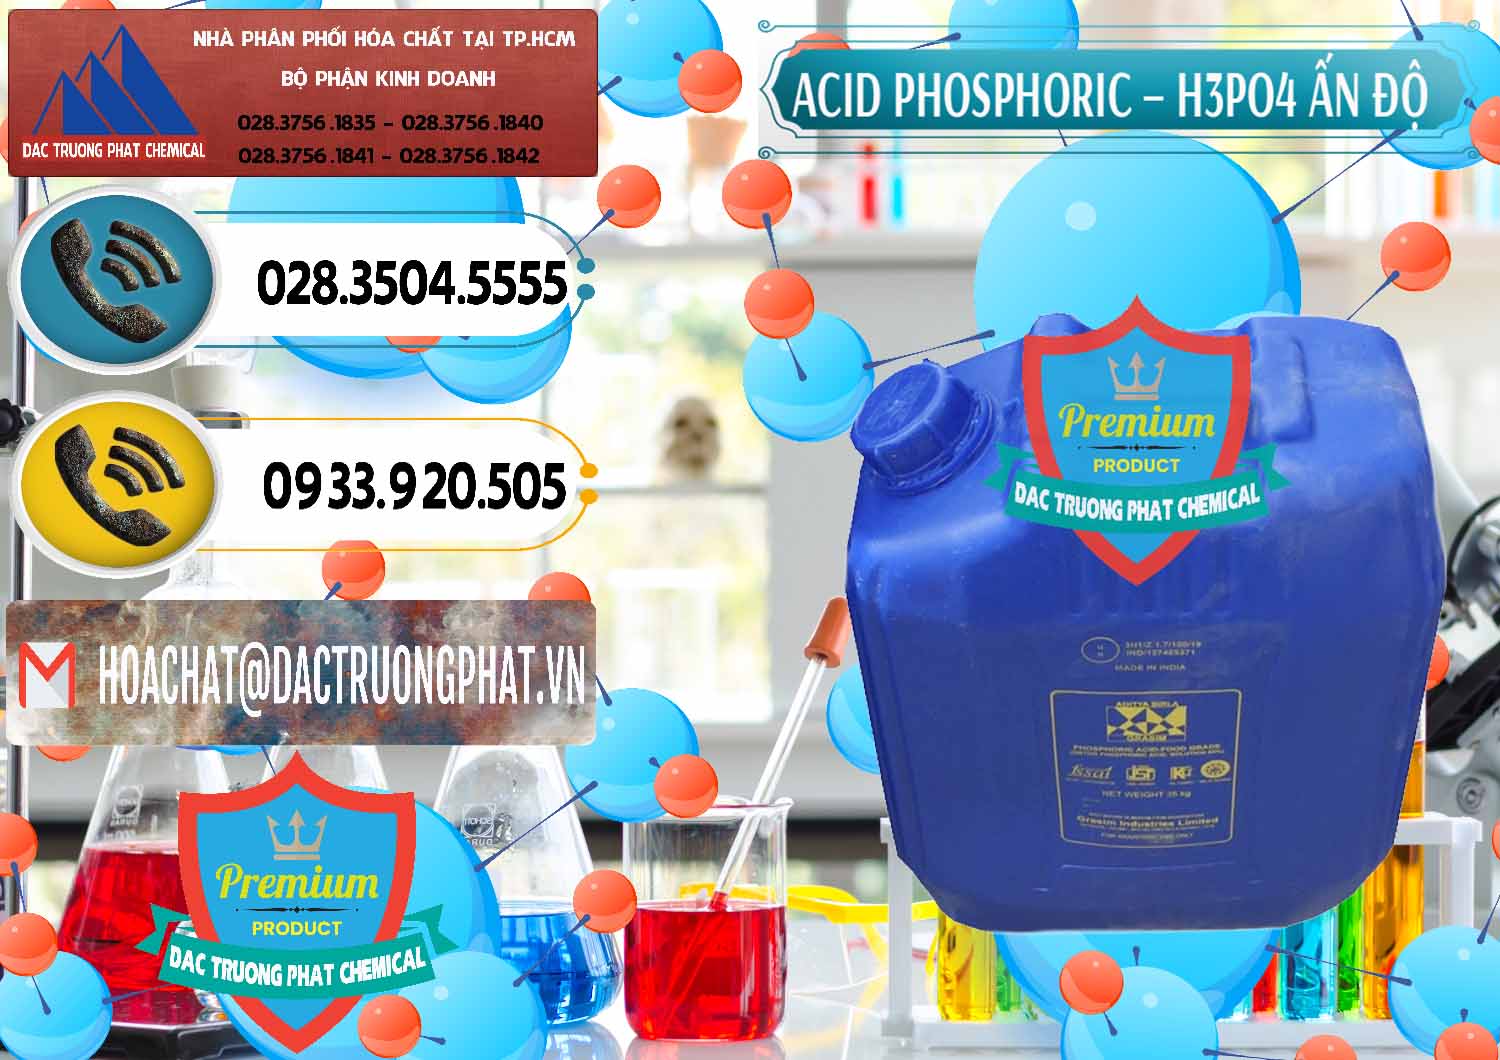 Nơi bán và phân phối Axit Phosphoric H3PO4 85% Ấn Độ - 0350 - Bán - cung cấp hóa chất tại TP.HCM - hoachatdetnhuom.vn